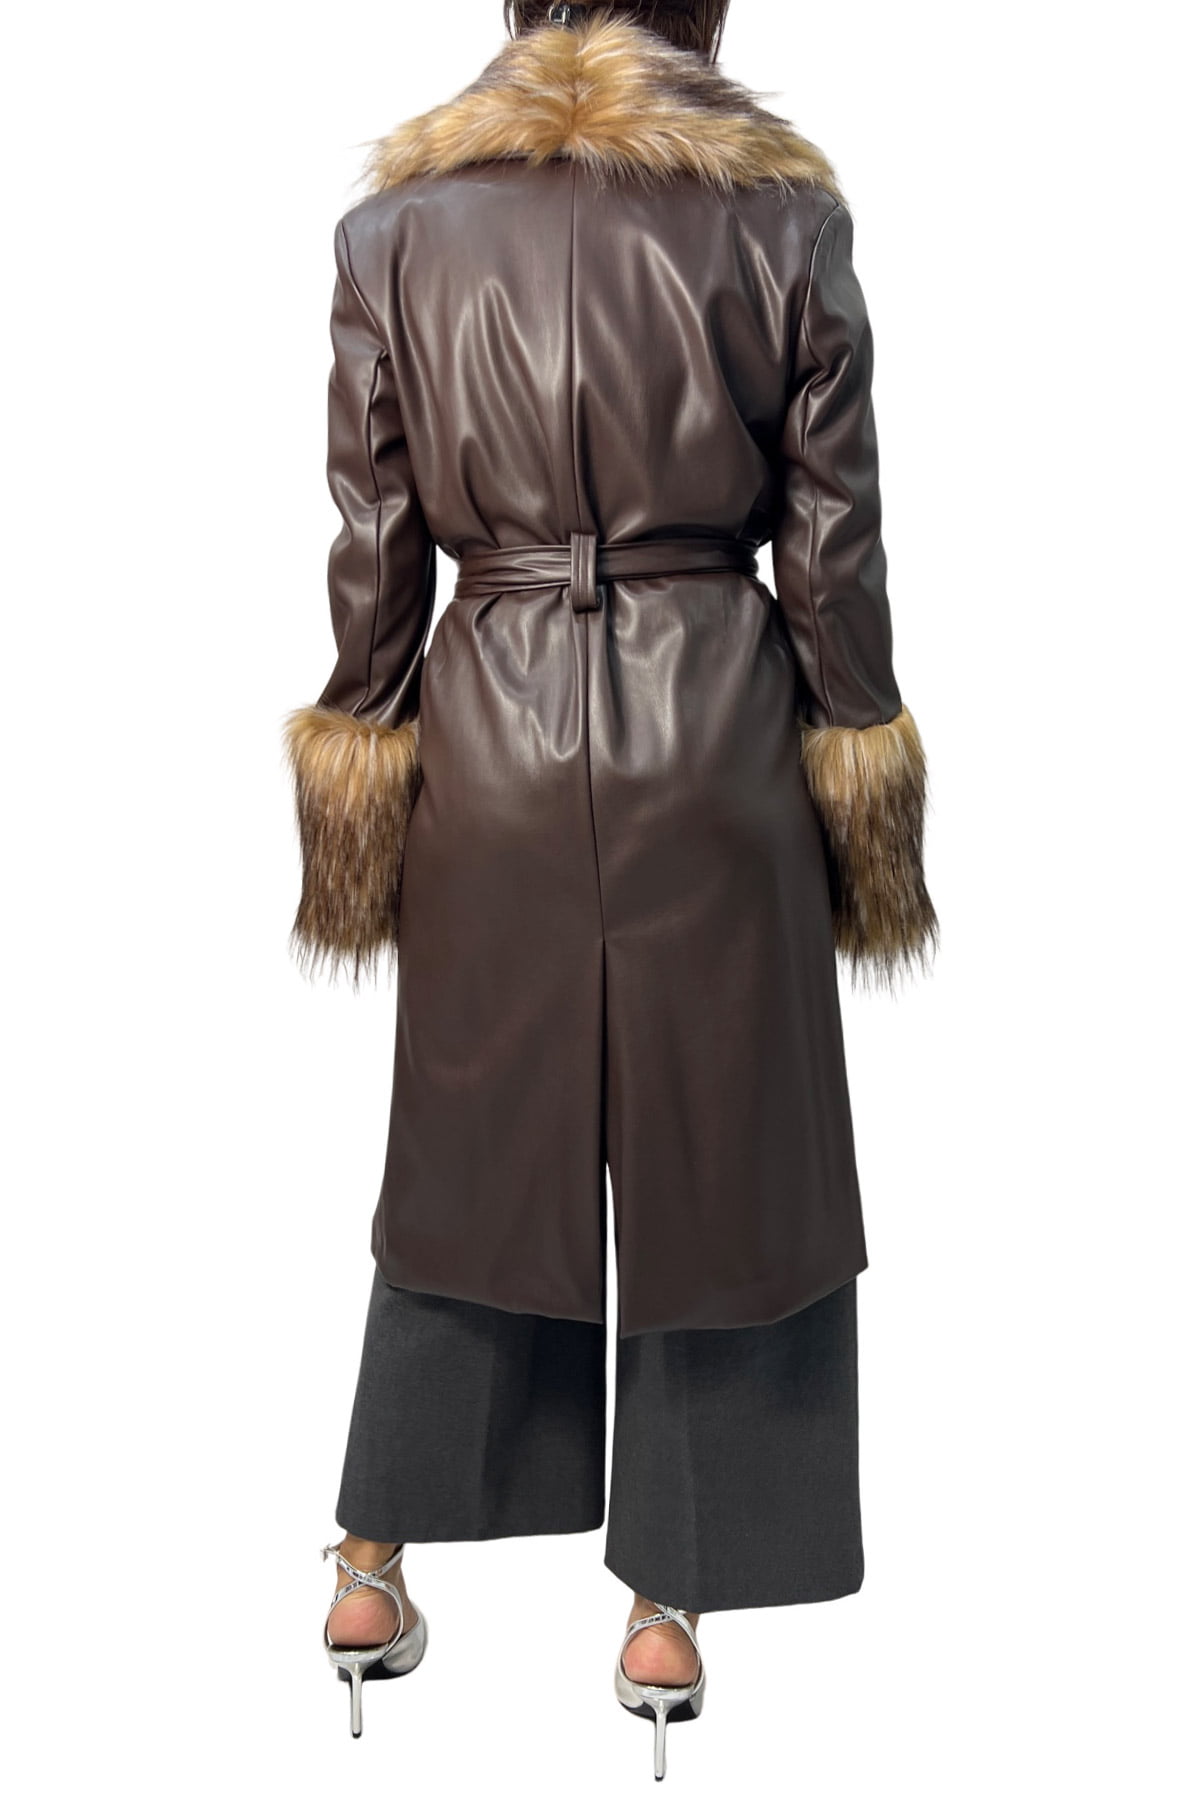 Cappotto donna midi in ecopelle con dettaglio collo e polsi in eco pelliccia pelo lungo